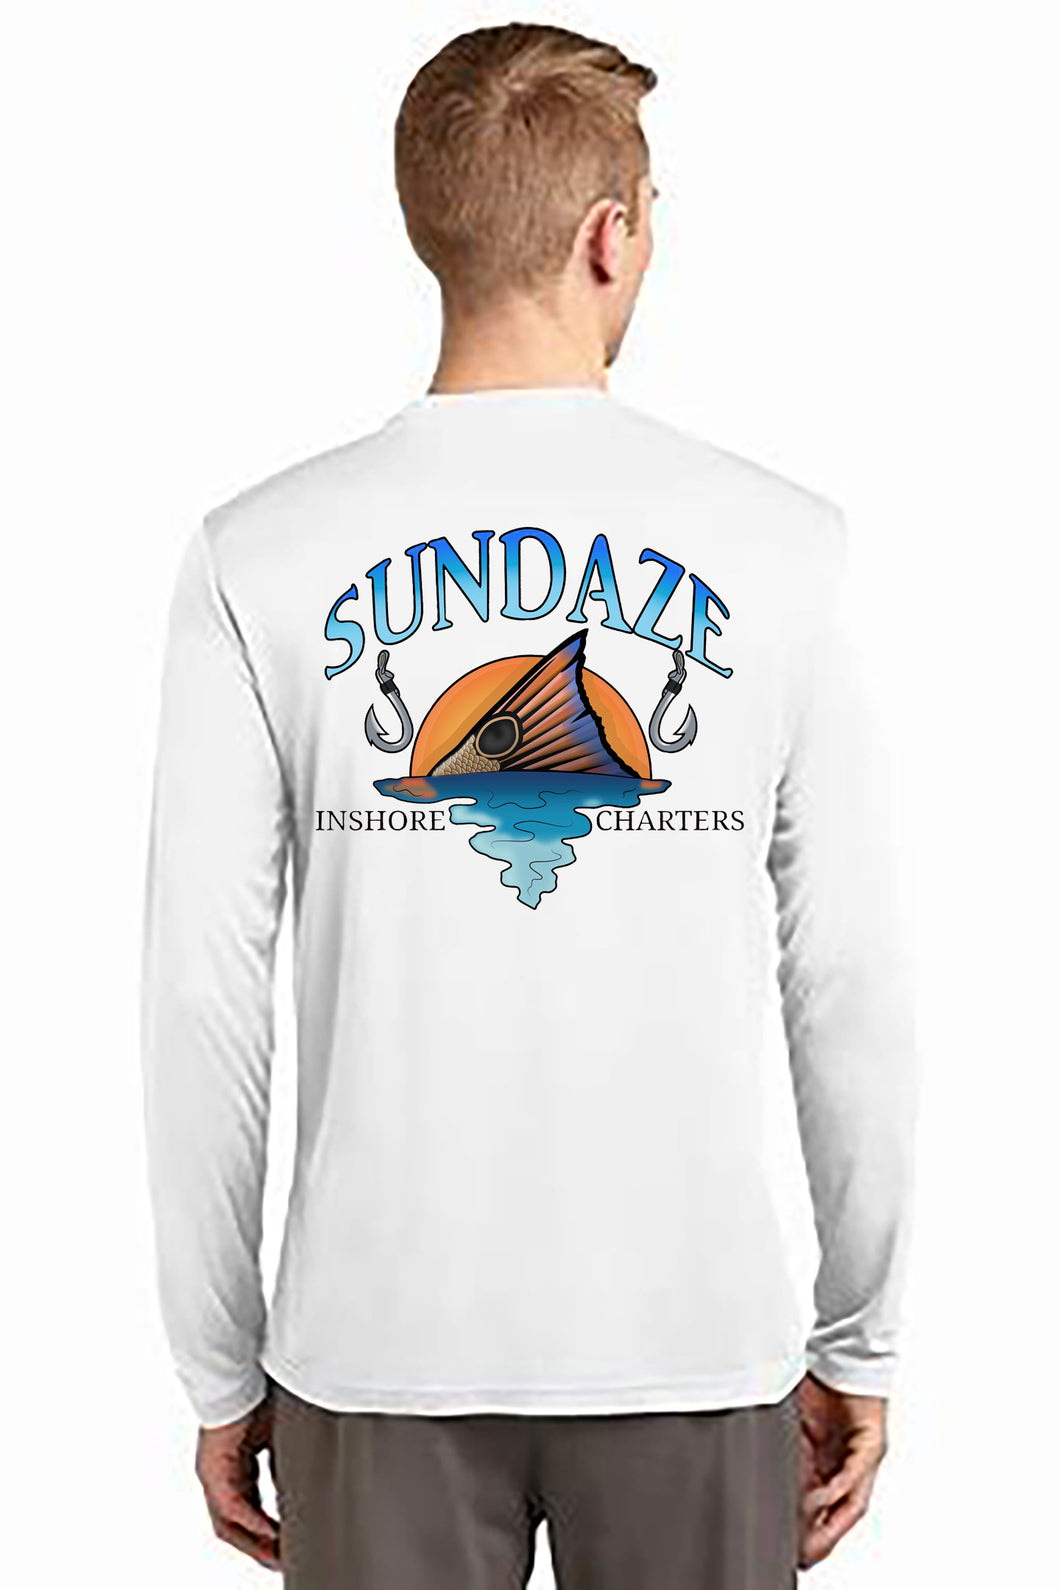 Sundaze Men's Long Sleeve Performance Shirt